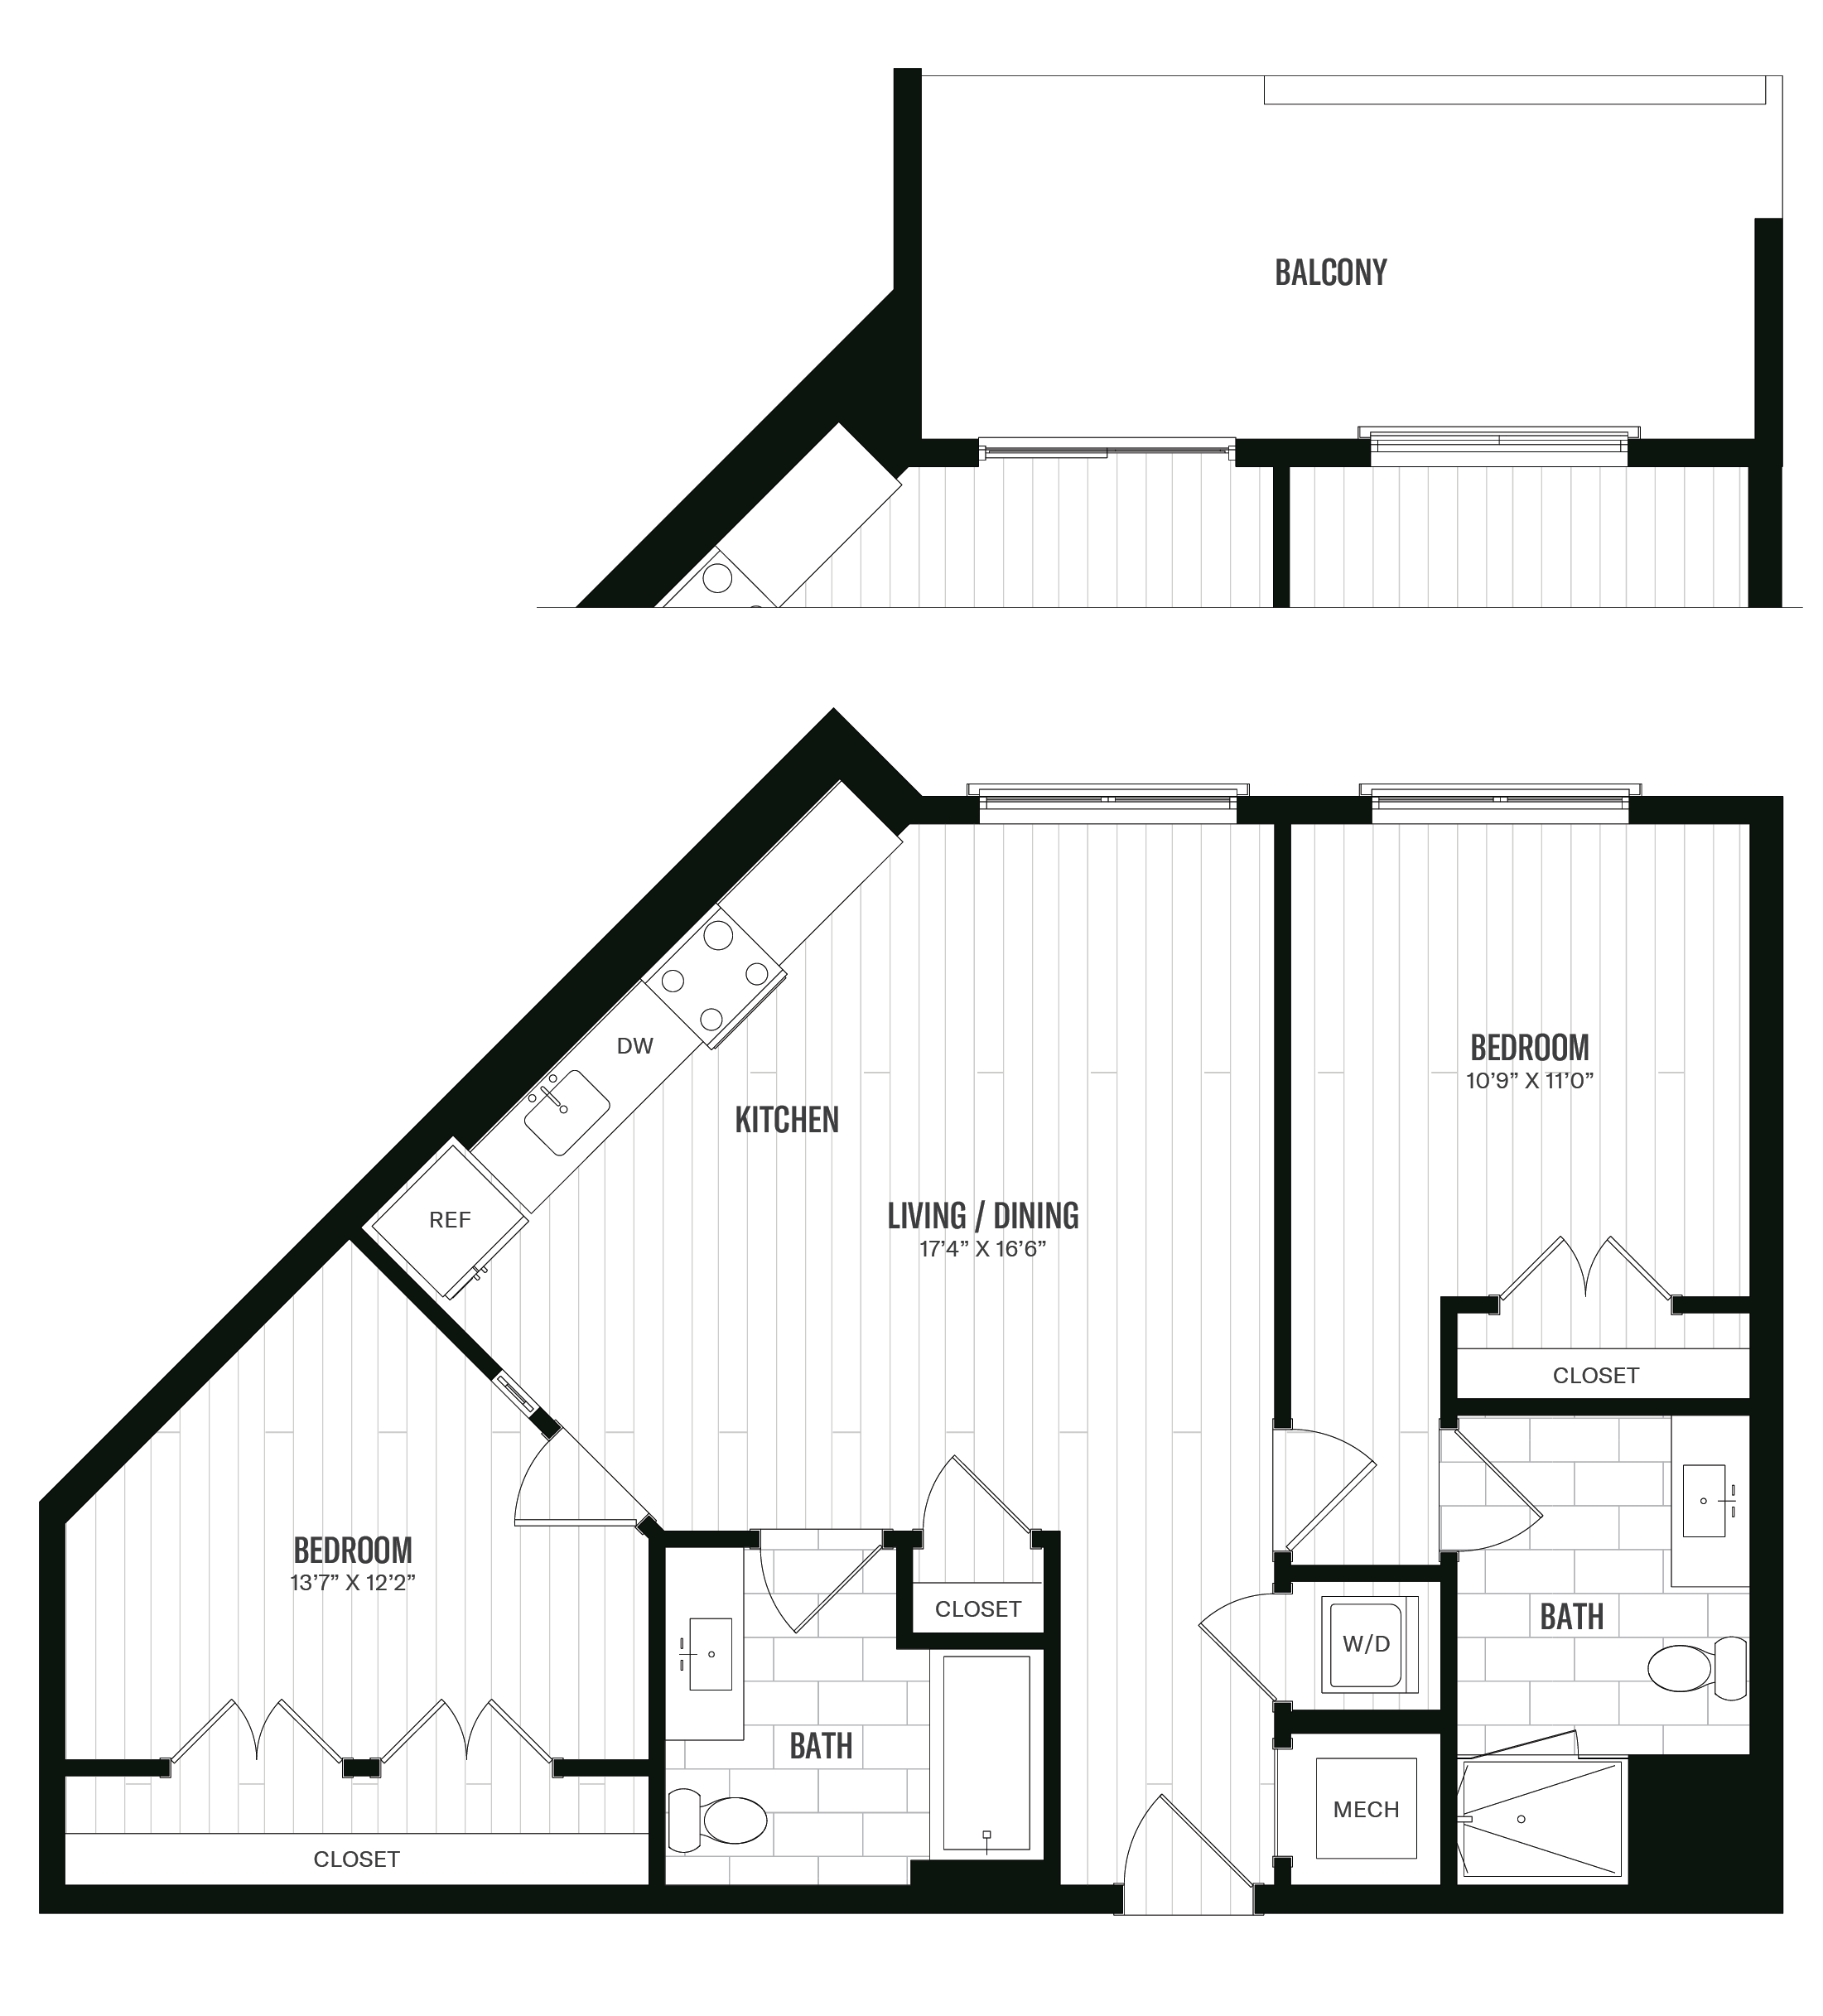 Floorplan image of unit 207